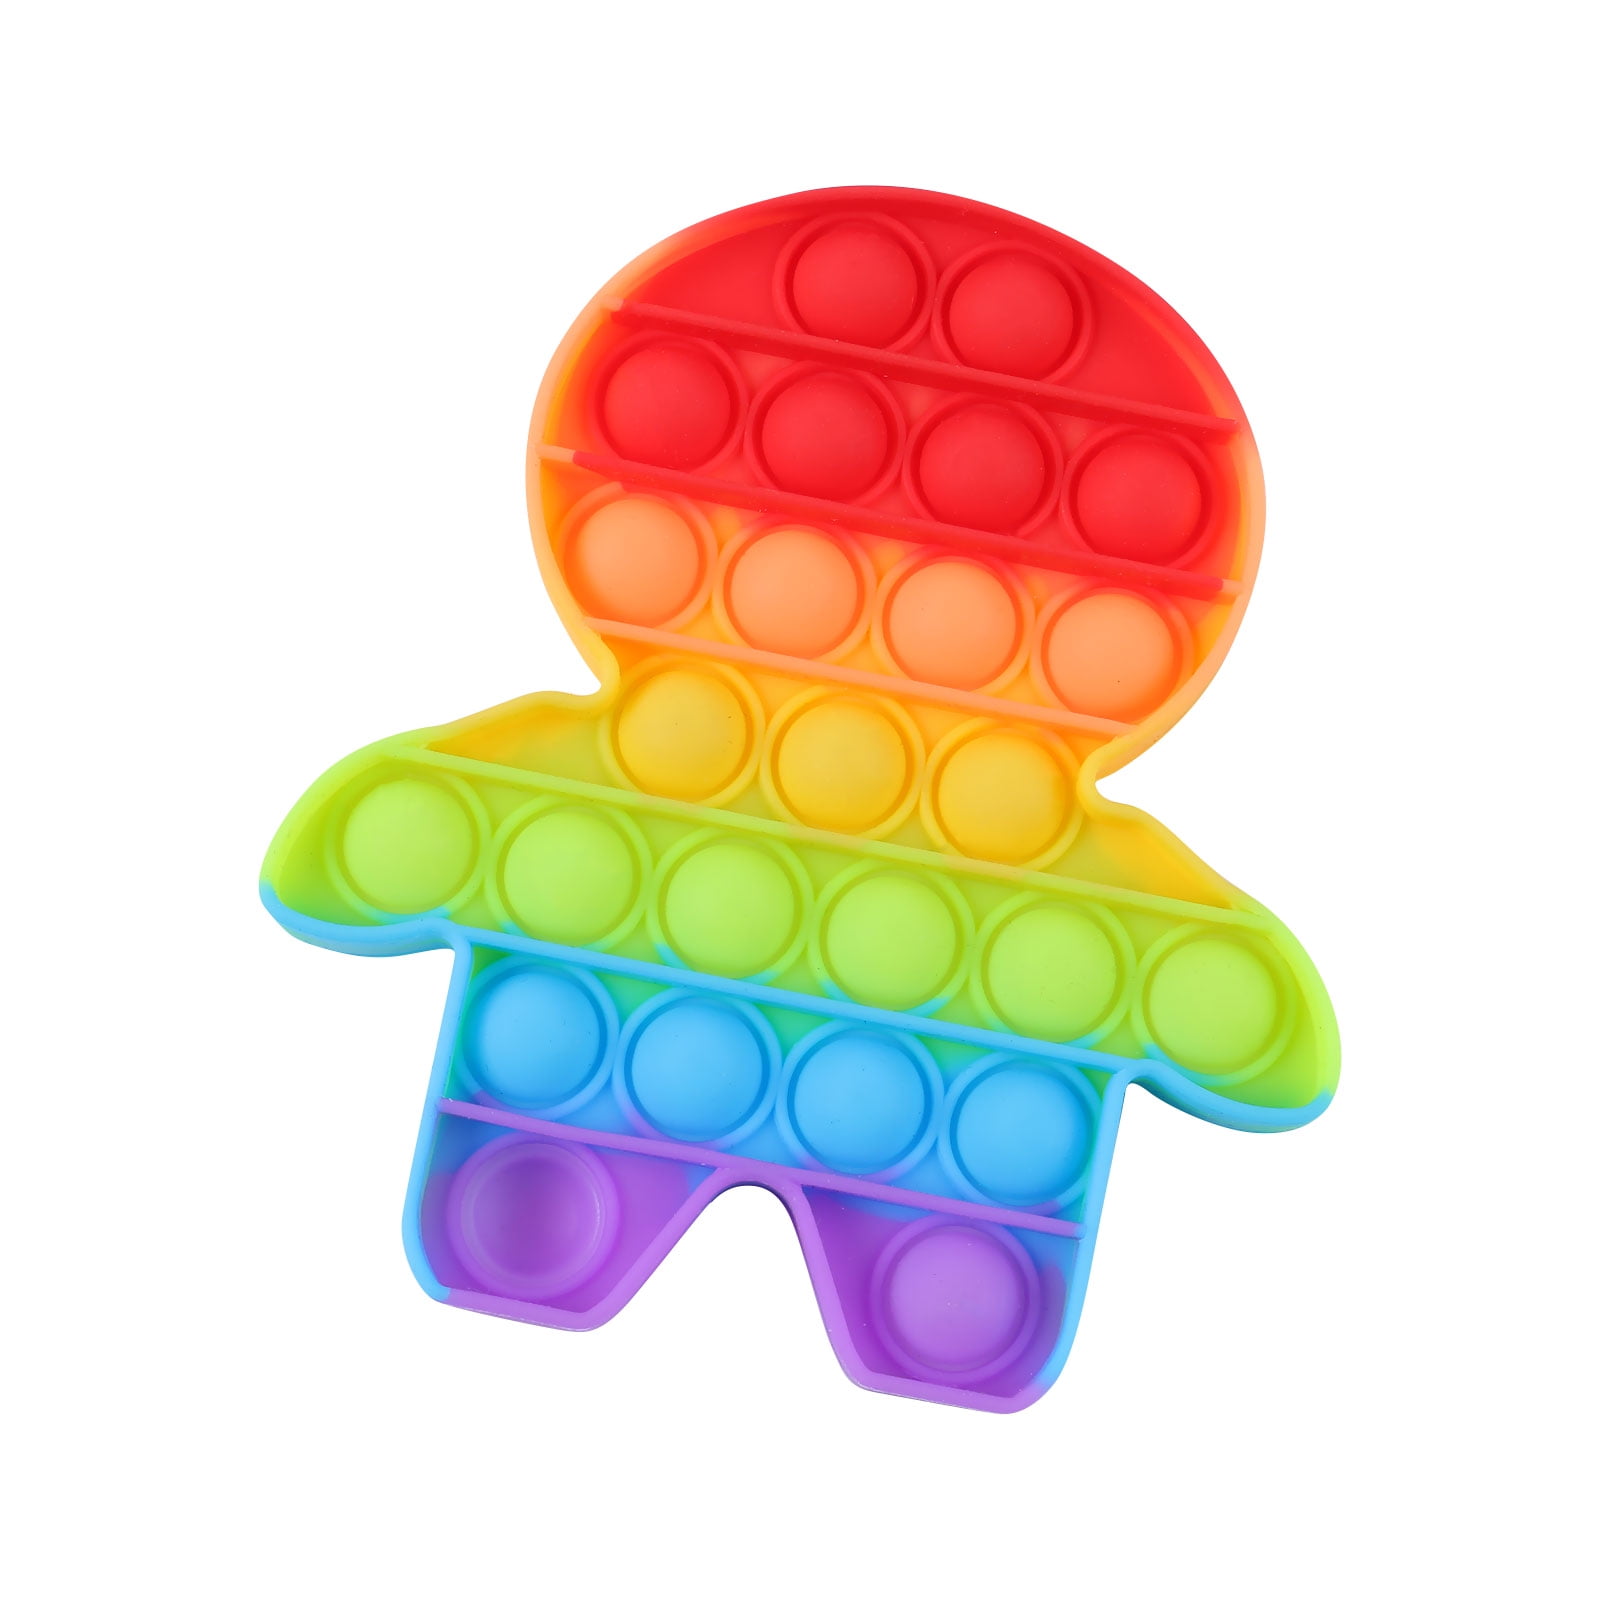 Details about   Popit Fidget Toy Antistress For Adult Autism Children Push Bubble Fidget Sensor 